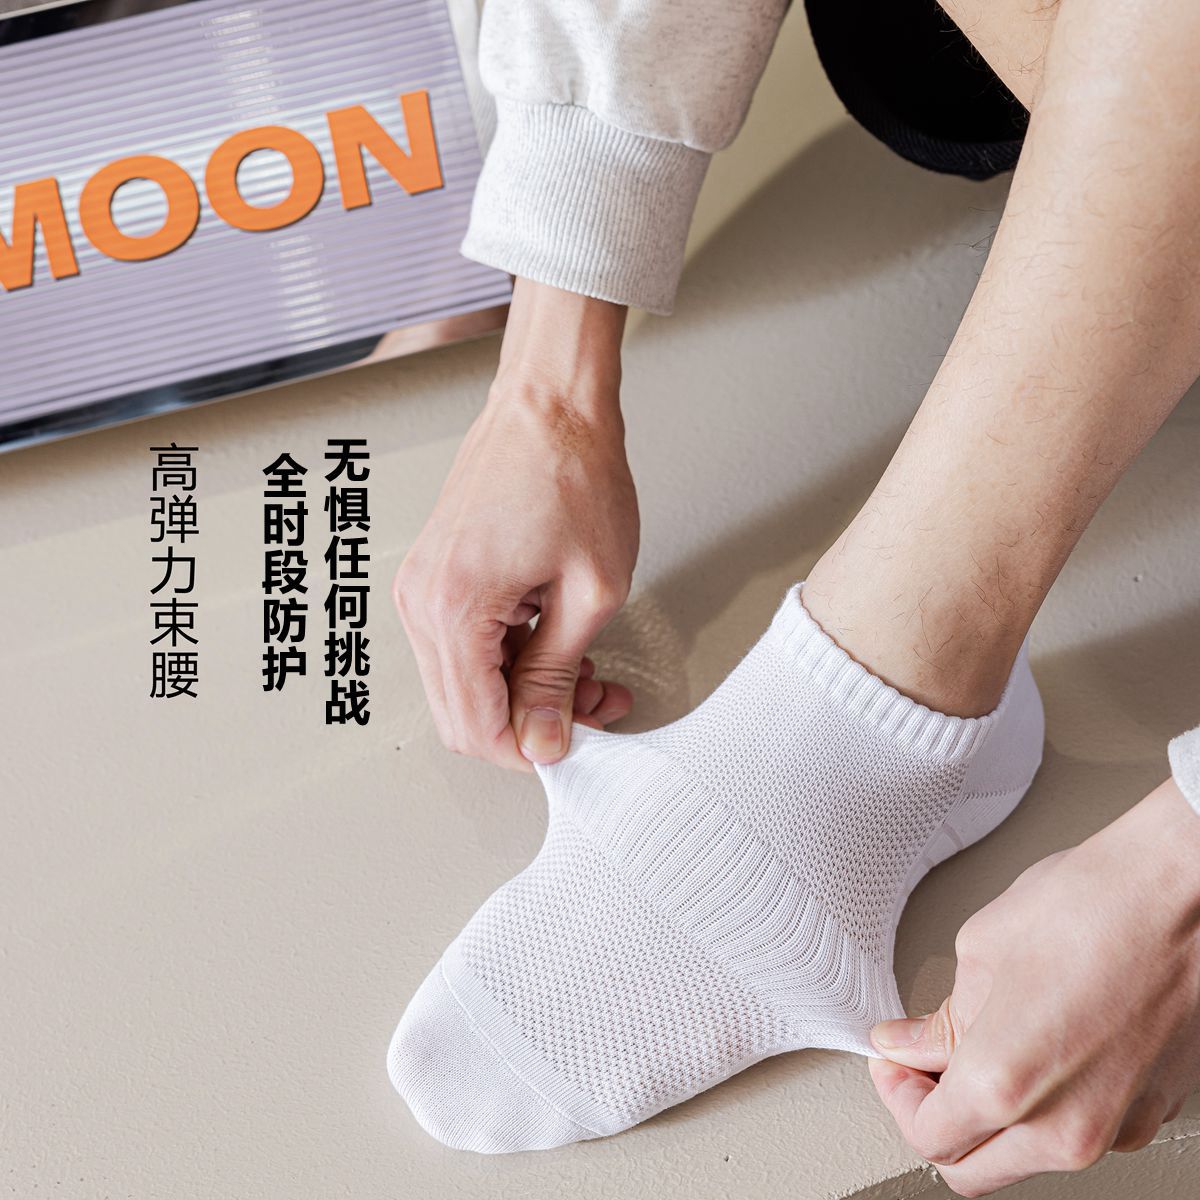 Men's Cotton Ankle Socks Spring/Summer Breathable Sweat Absorbing Socks Non-Slip Tight Ins Trendy Four Seasons Long Tube Athletic Socks